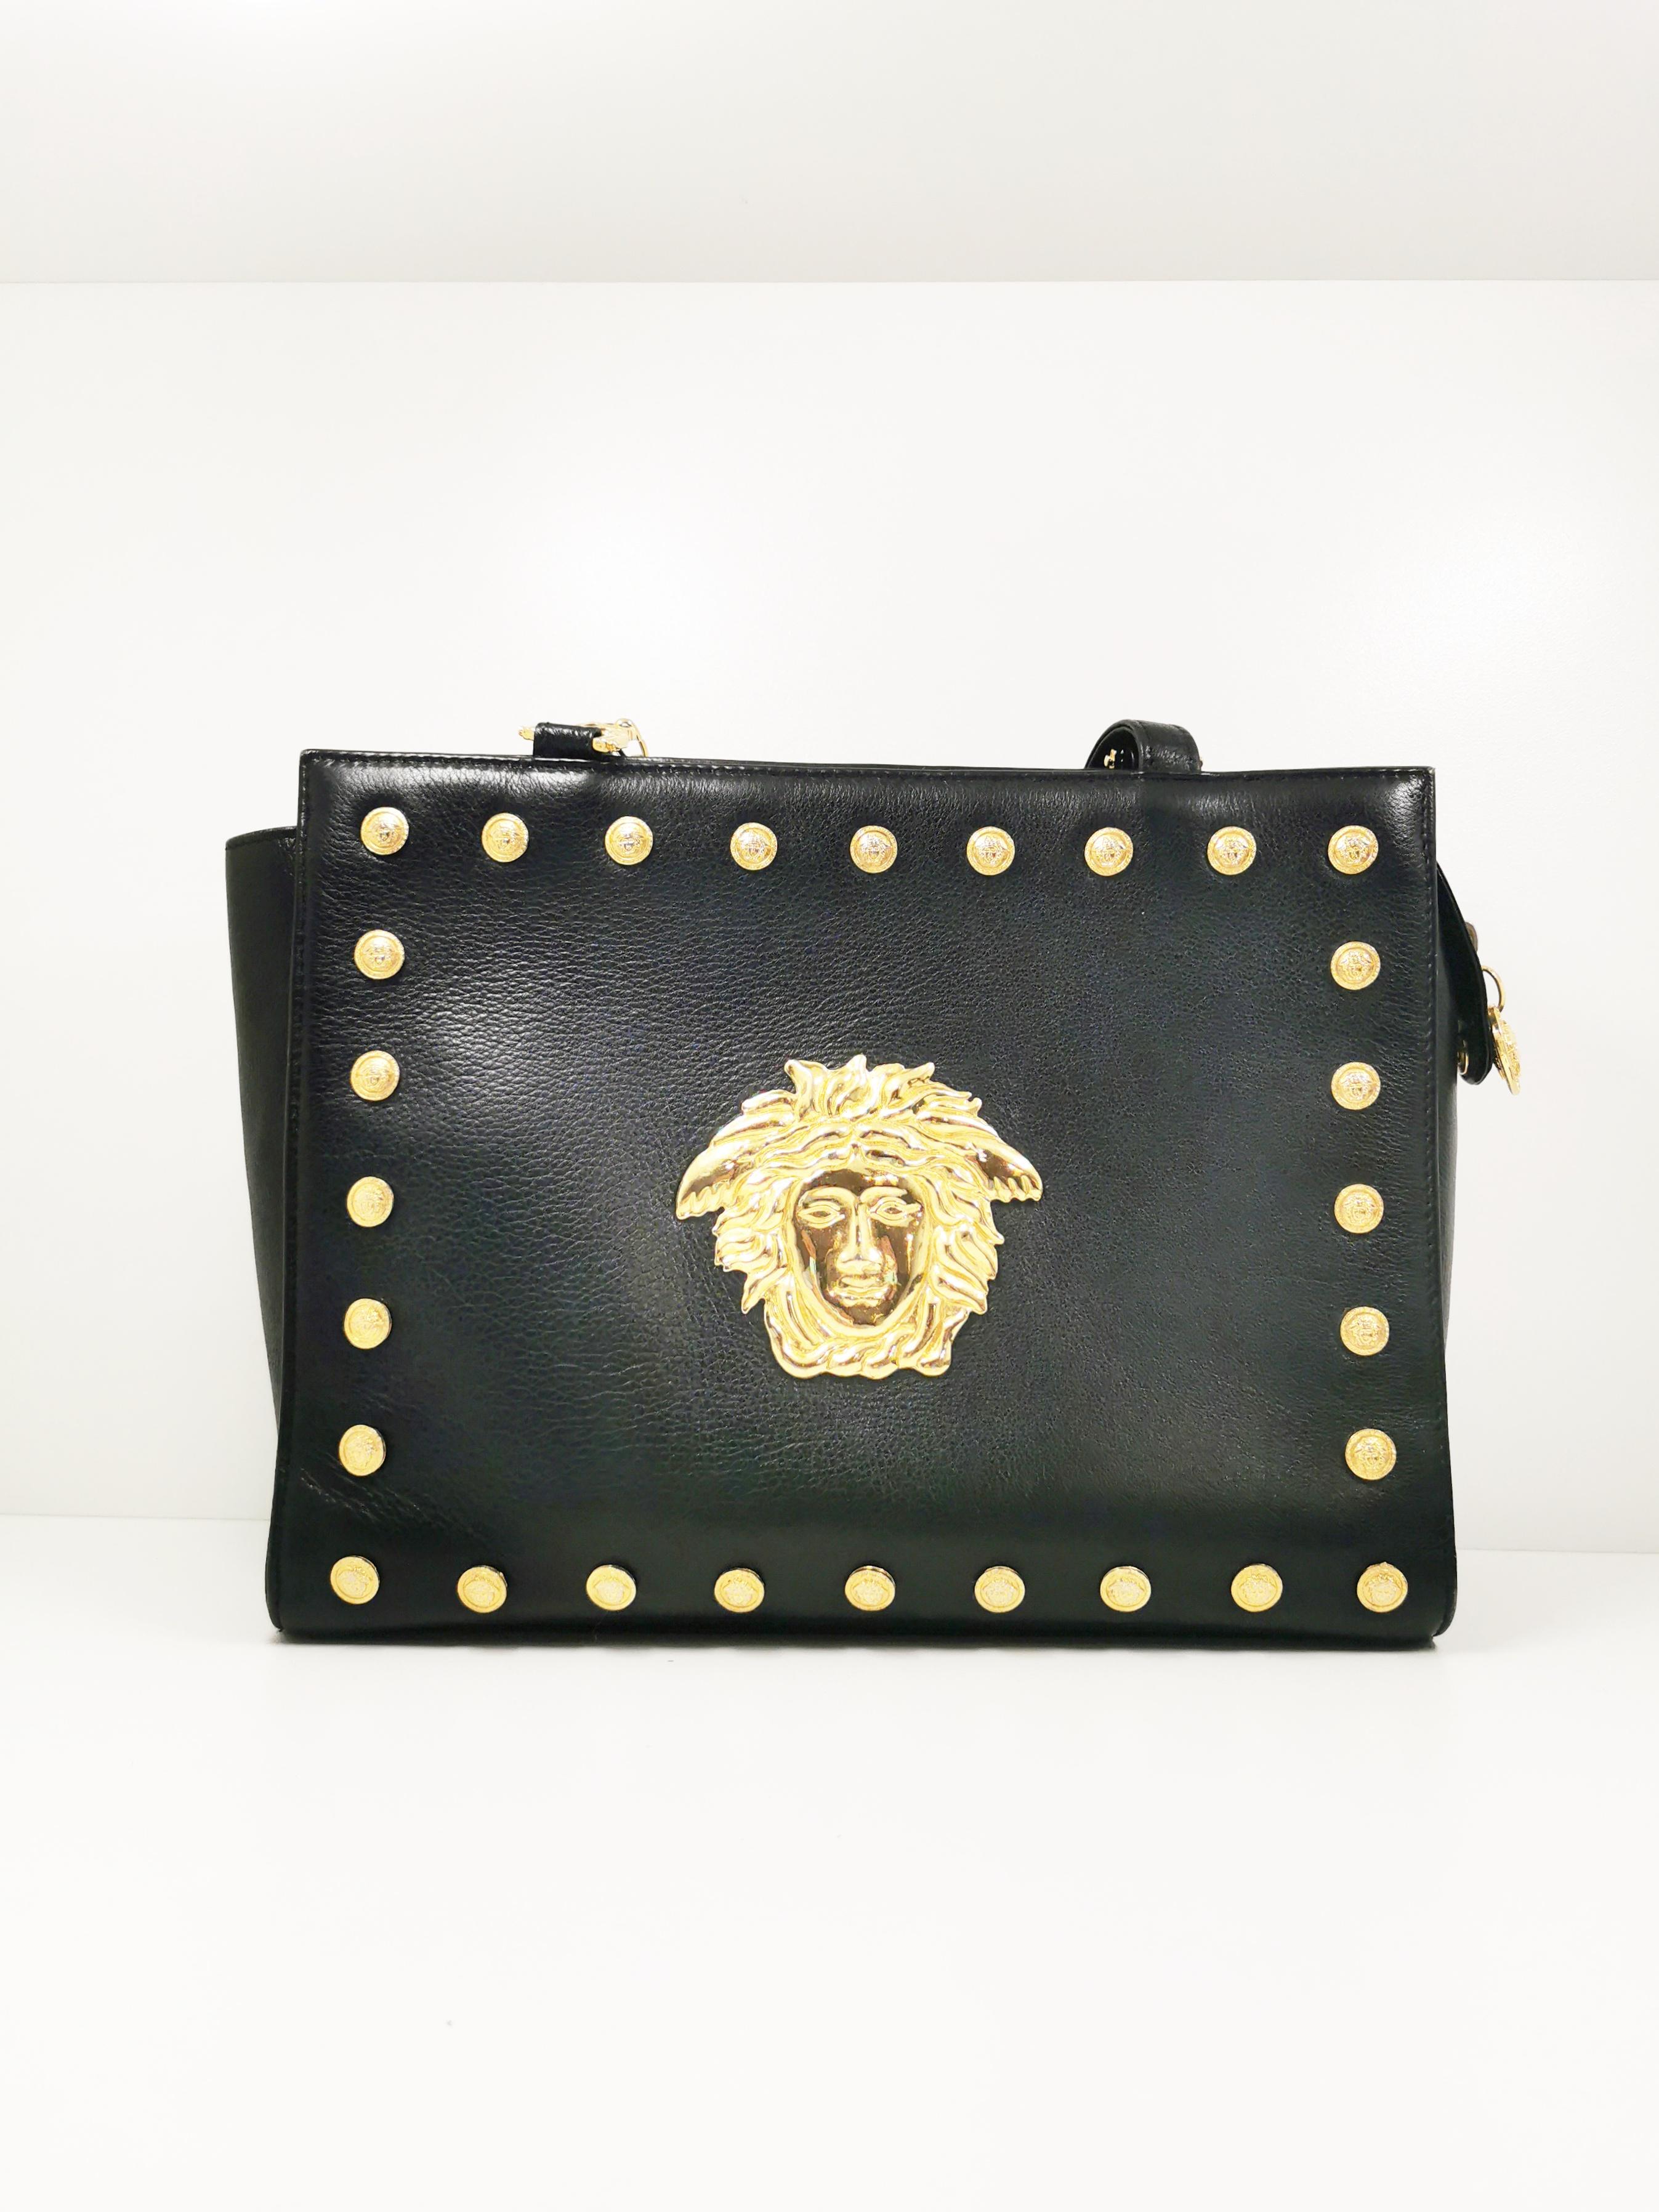 Le sac à bandoulière Gianni Versace Signature Medusa Head Gold Medallion des années 1990 est une véritable icône de l'histoire de la mode. Cet accessoire exquis capture l'essence de l'esthétique audacieuse et glamour de Gianni Versace, ce qui en